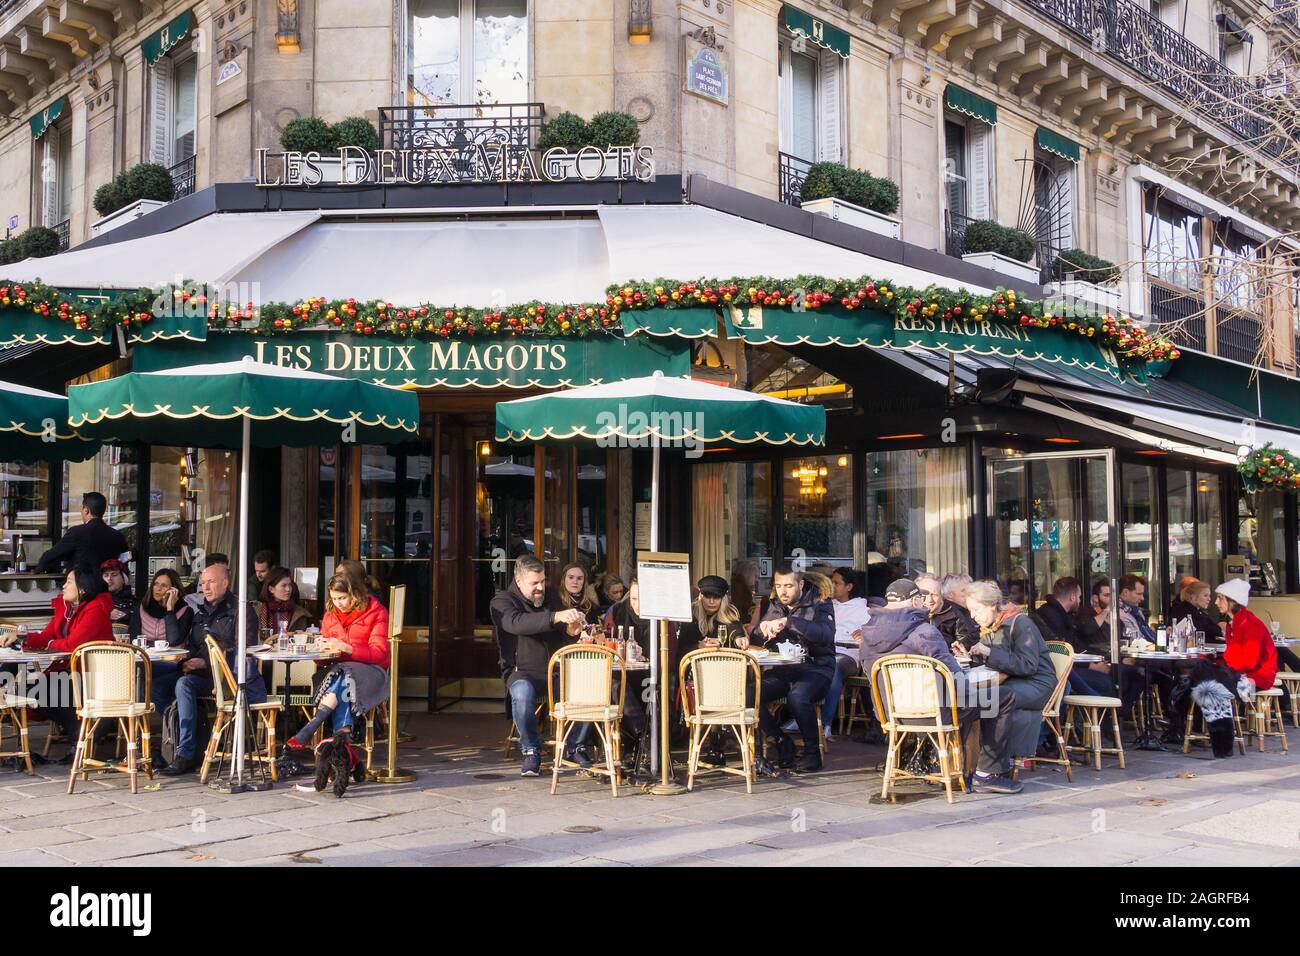 Paris Les Deux Magots - Patrons enjoying the winter sun at Les Deux Magots cafe in the Saint-Germain-des-Prés area of Paris, France, Europe. Stock Photo